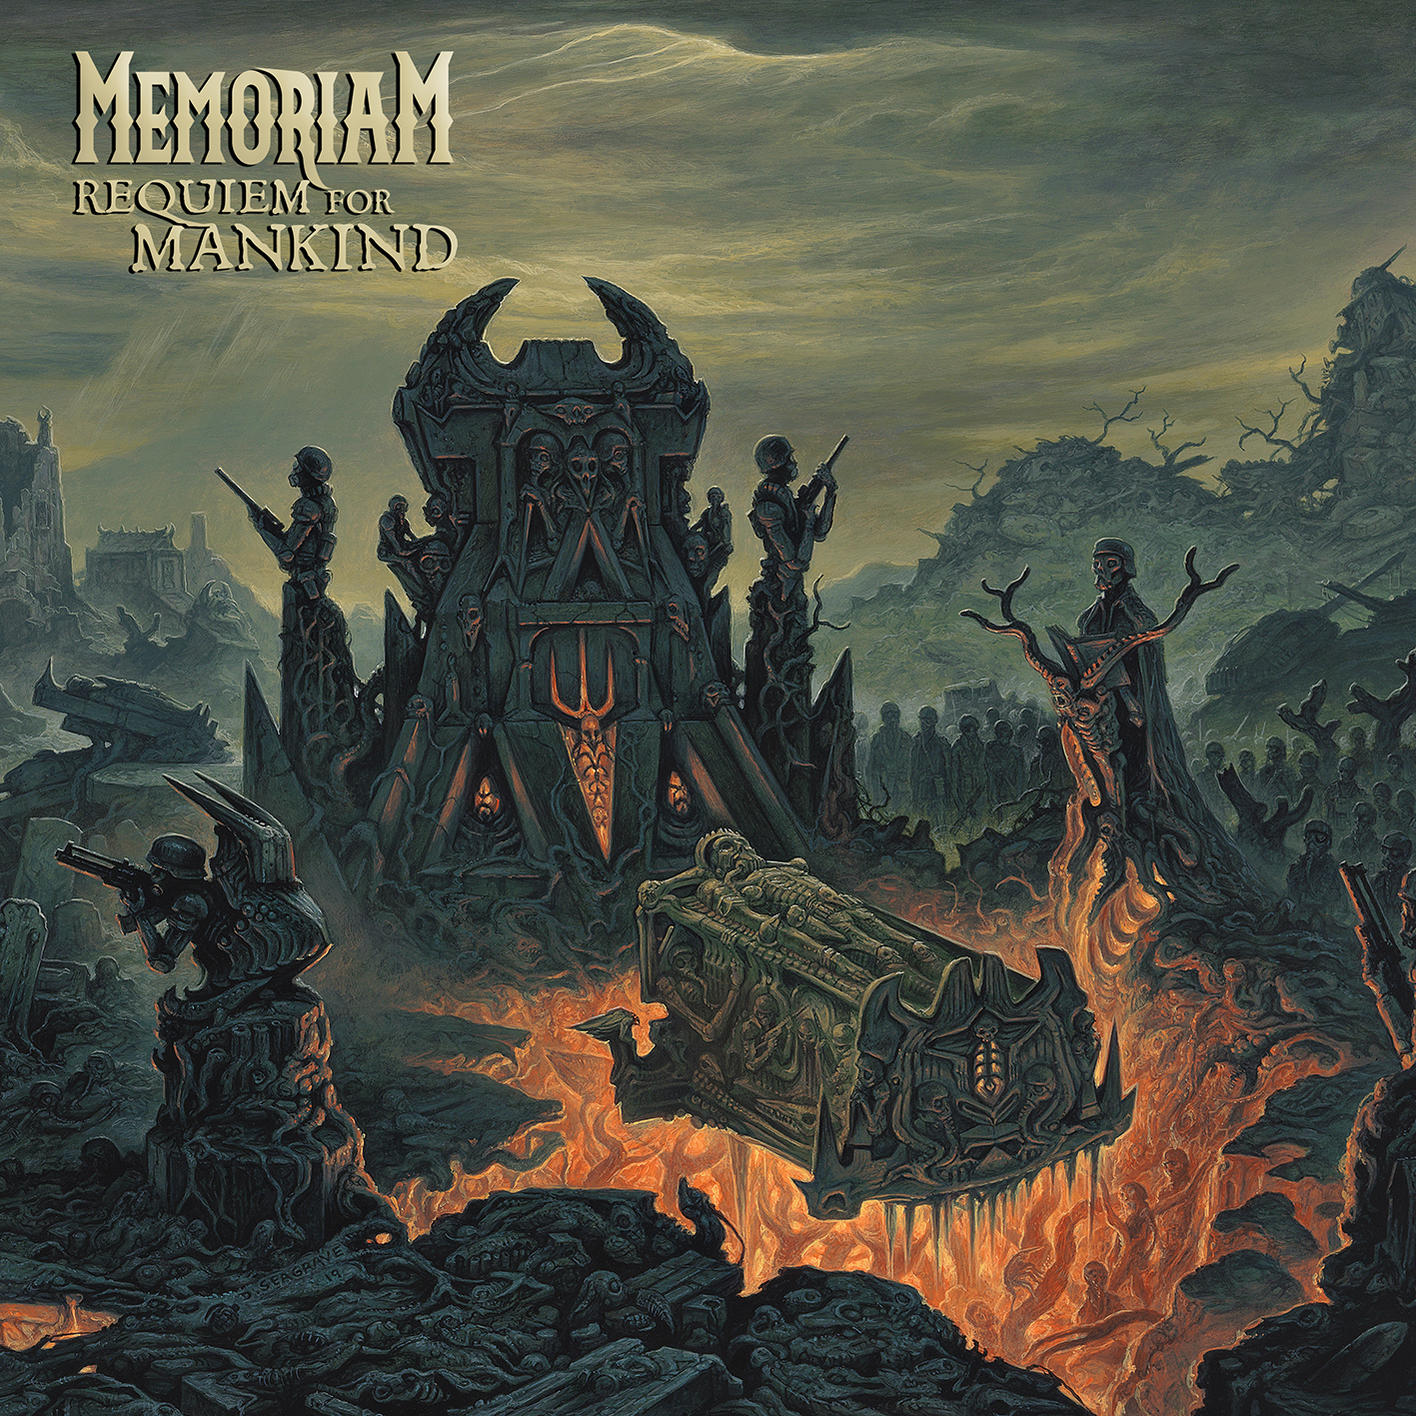 Memoriam - Mankind for Requiem (Vinyl) 